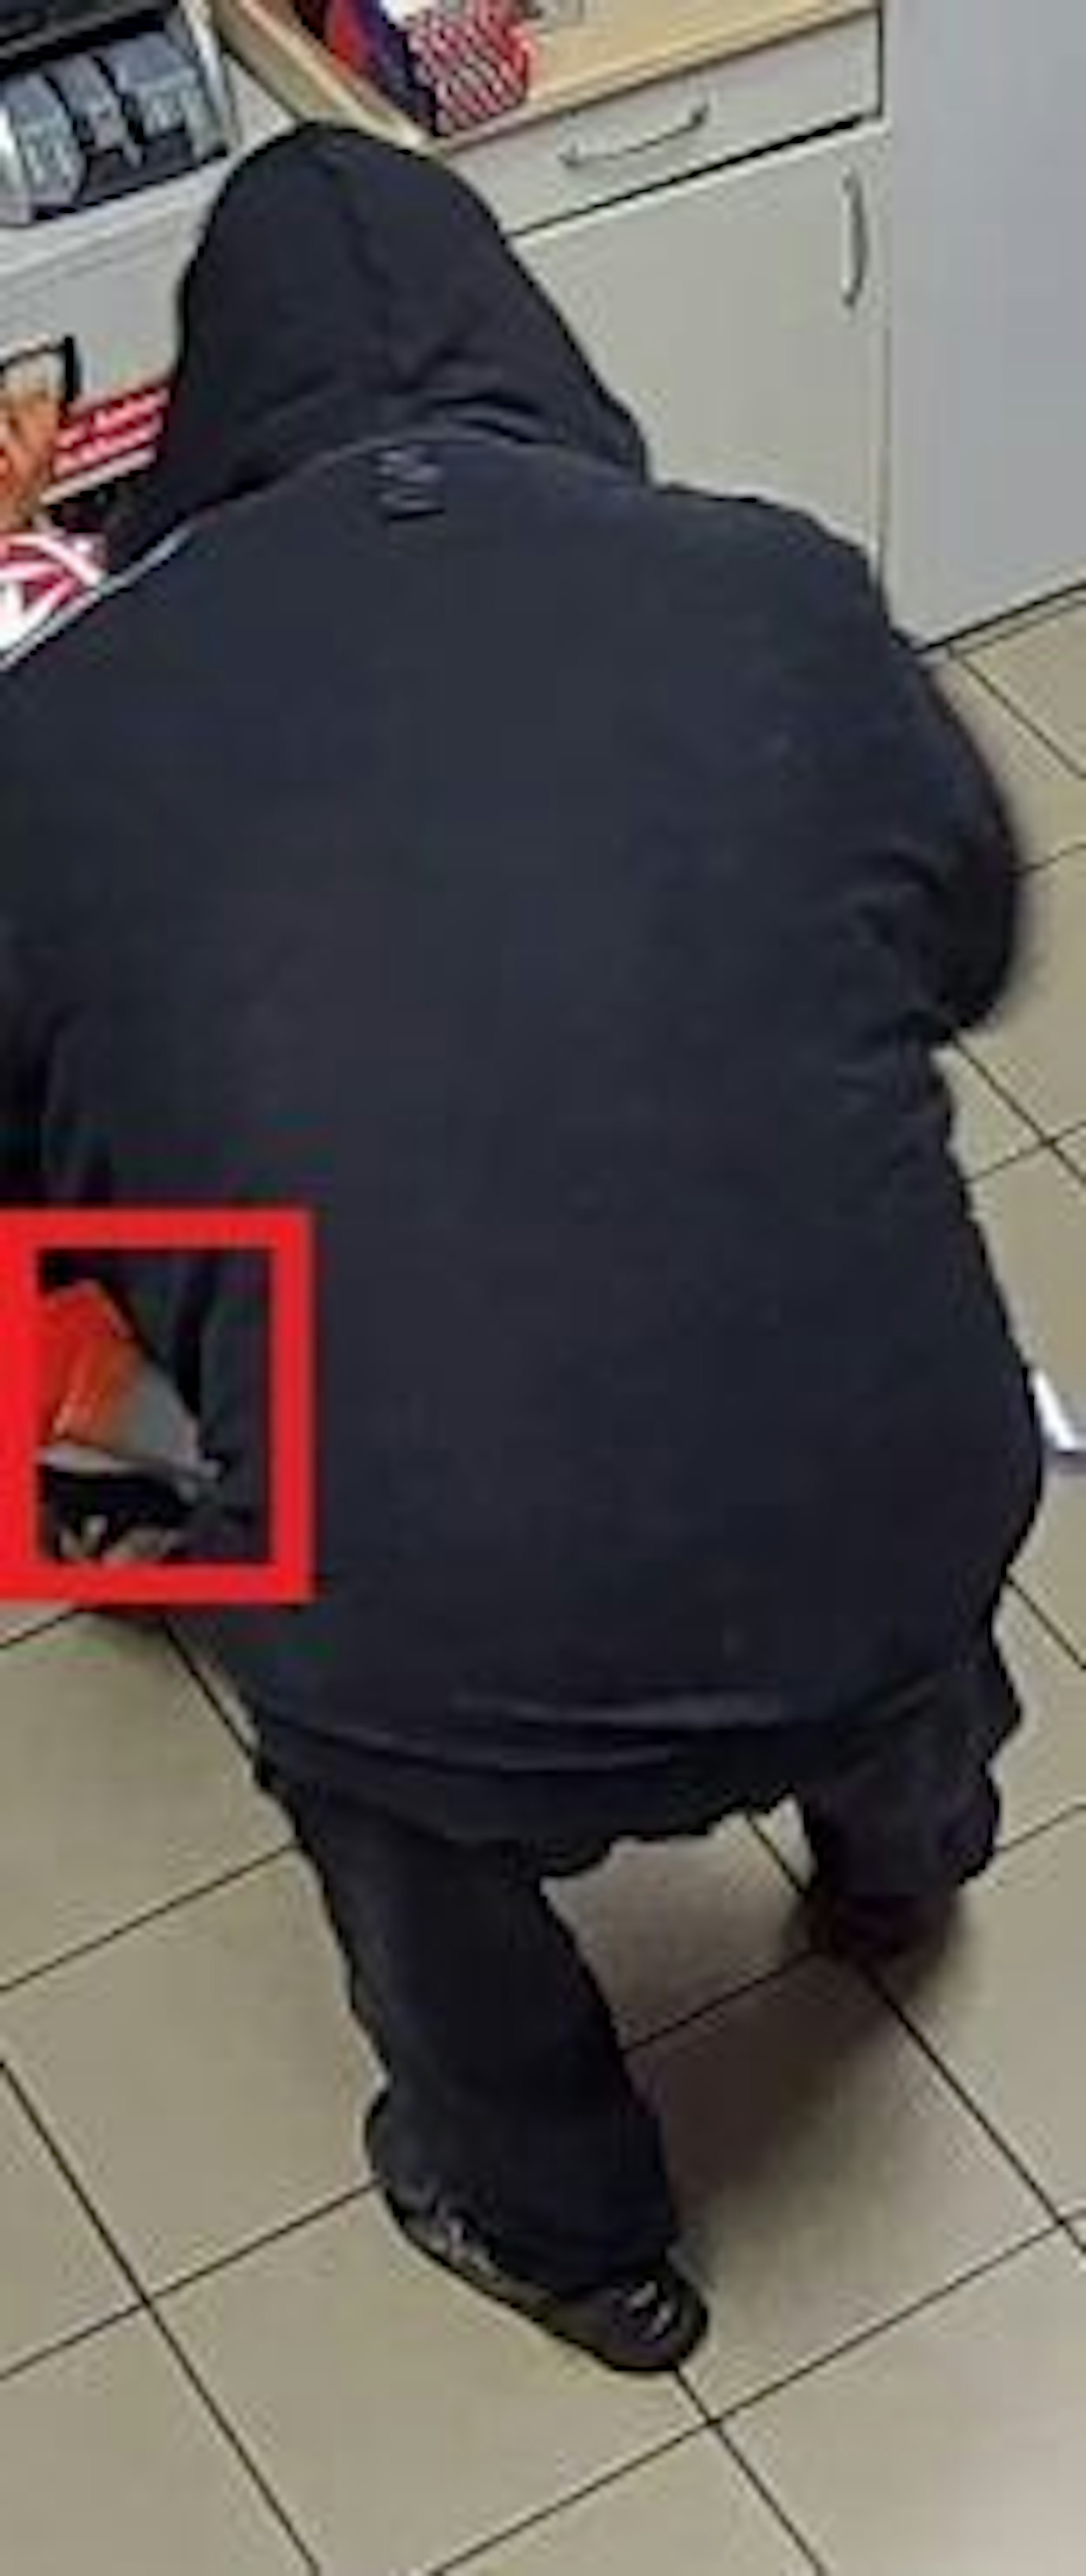 Fahndungsfoto eines Mannes, der eine Frau mit einer Waffe bedroht.